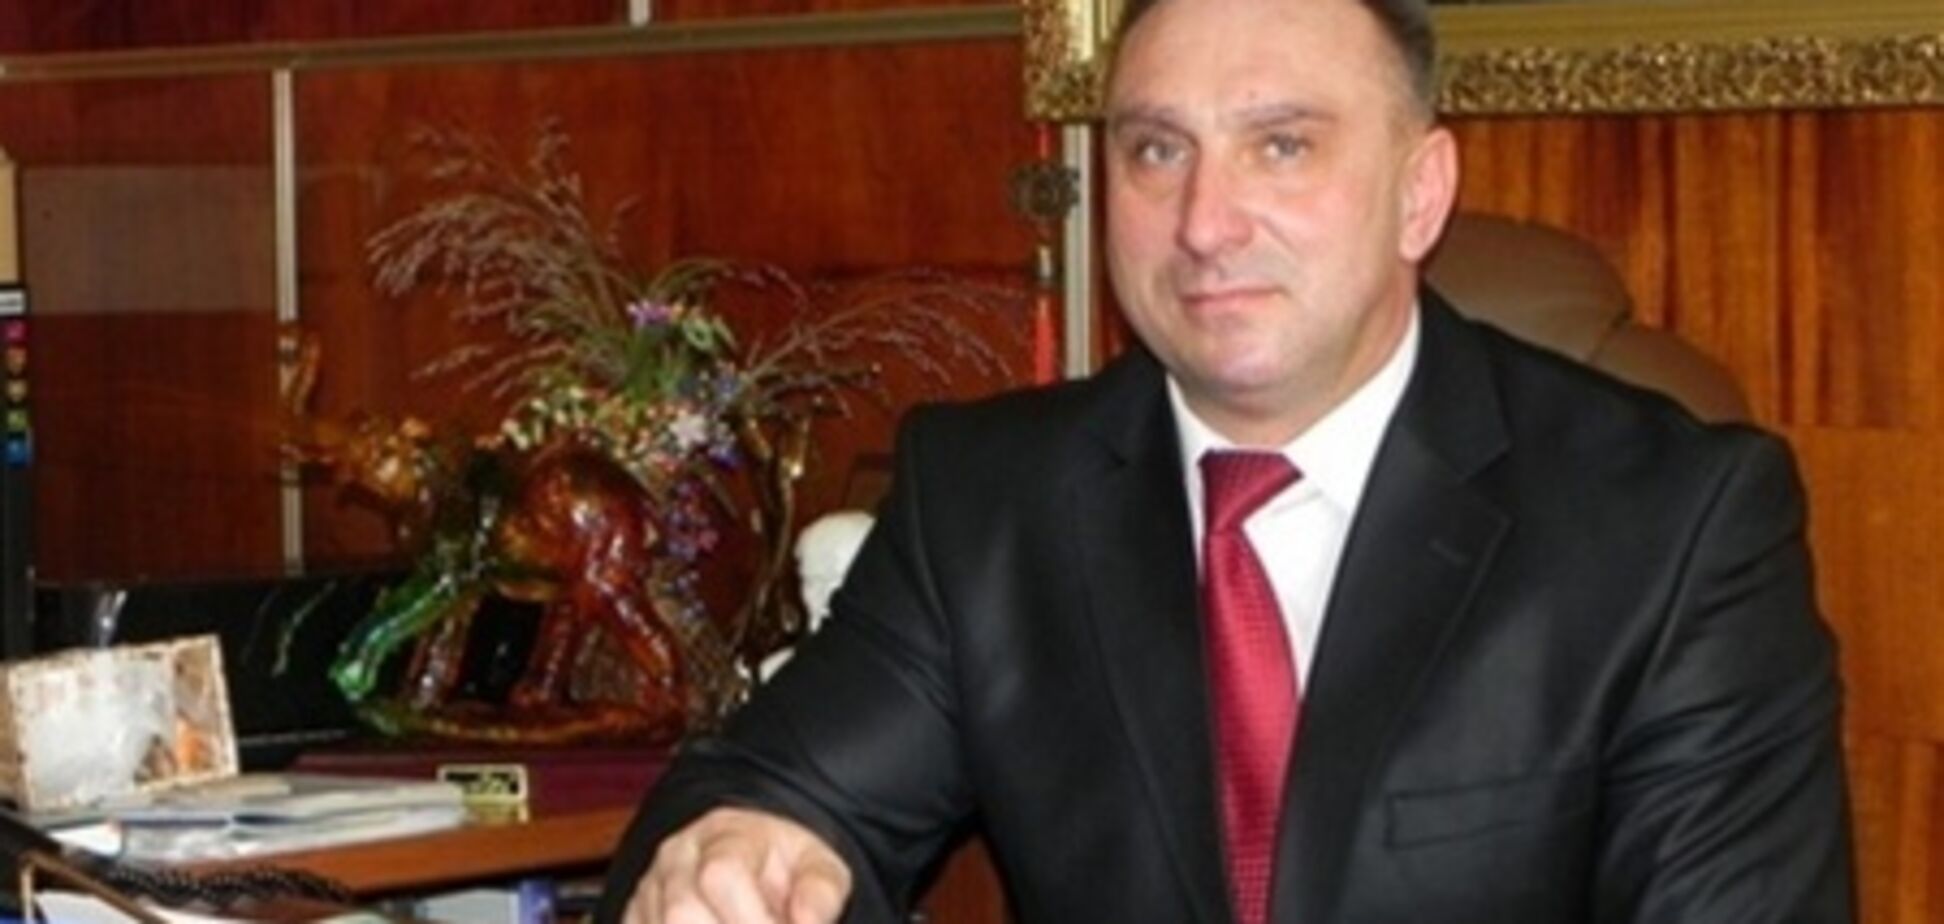 На Черкасщине умер мэр, подозревают убийство - СМИ